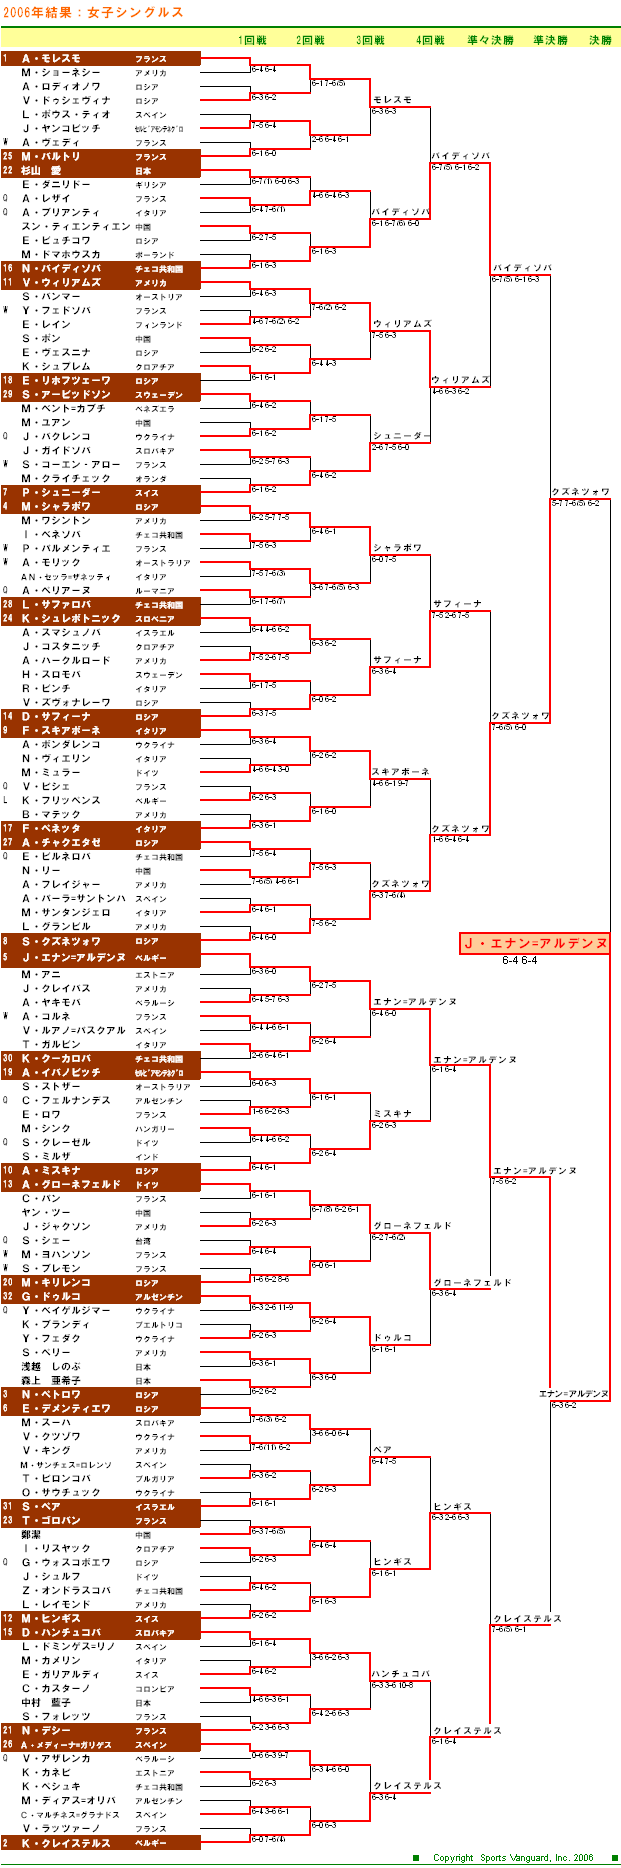 全仏オープンテニス2006　女子シングルスドロー表